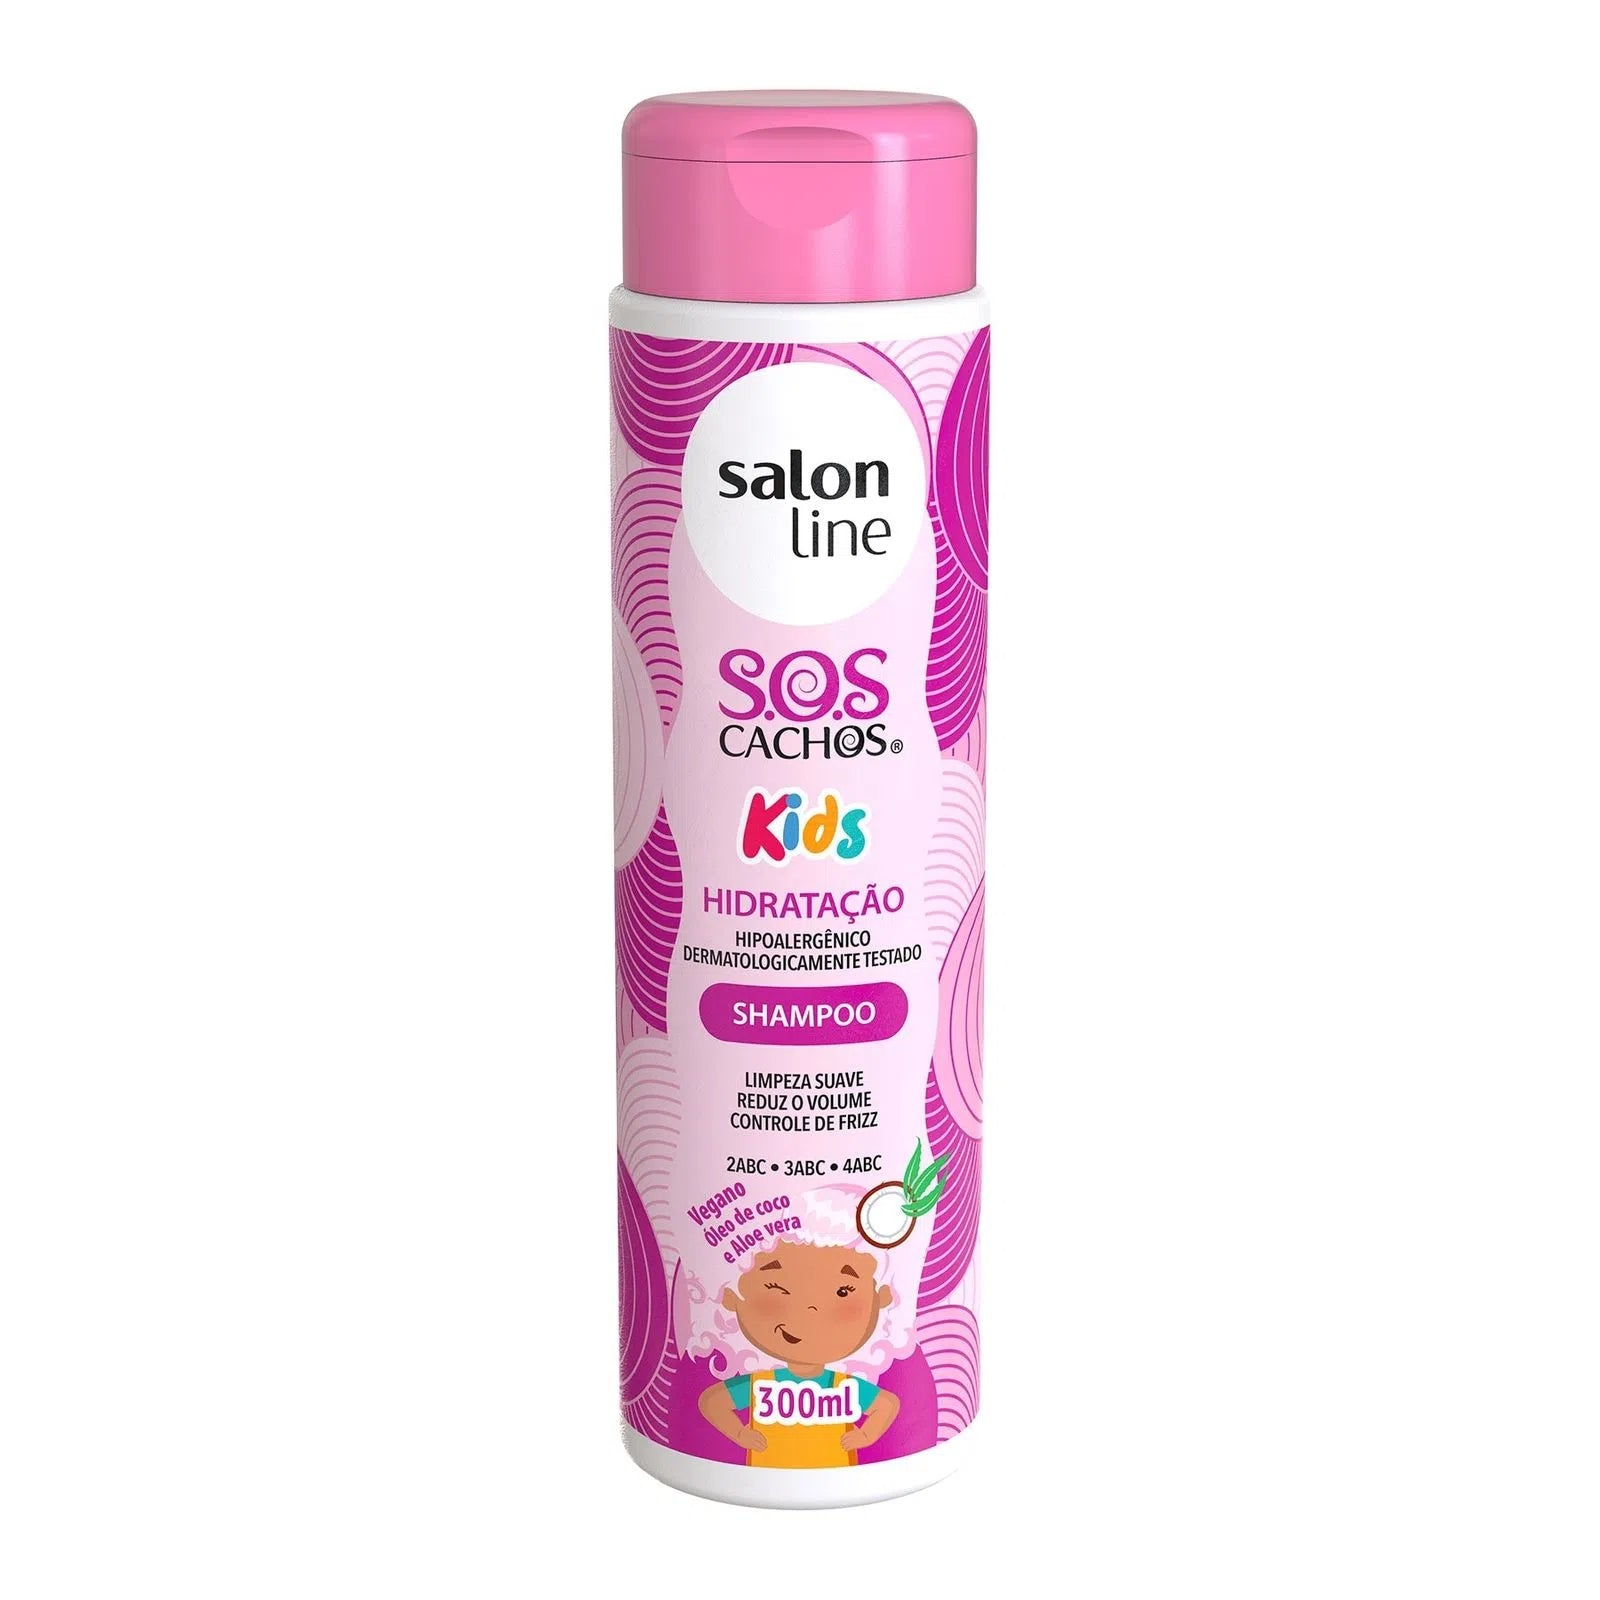 SOS Cachos Kids Hidratação Shampoo Salon Line 300ml